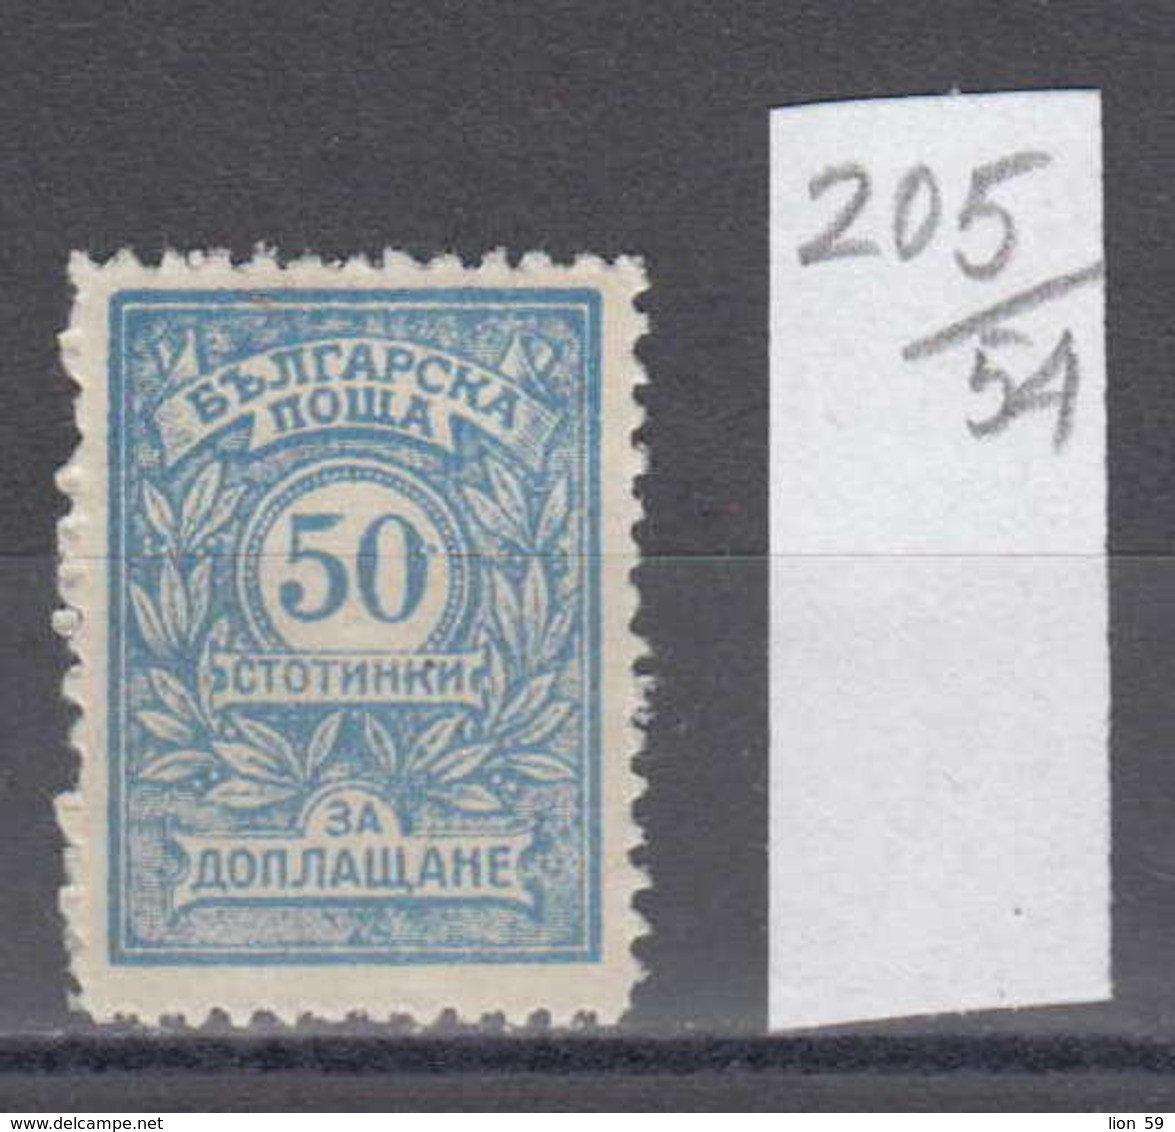 54K205 / T36 Bulgaria 1921 Michel Nr. 25 Z - Timbres-taxe POSTAGE DUE Portomarken , Ziffernzeichnung  ** MNH - Impuestos